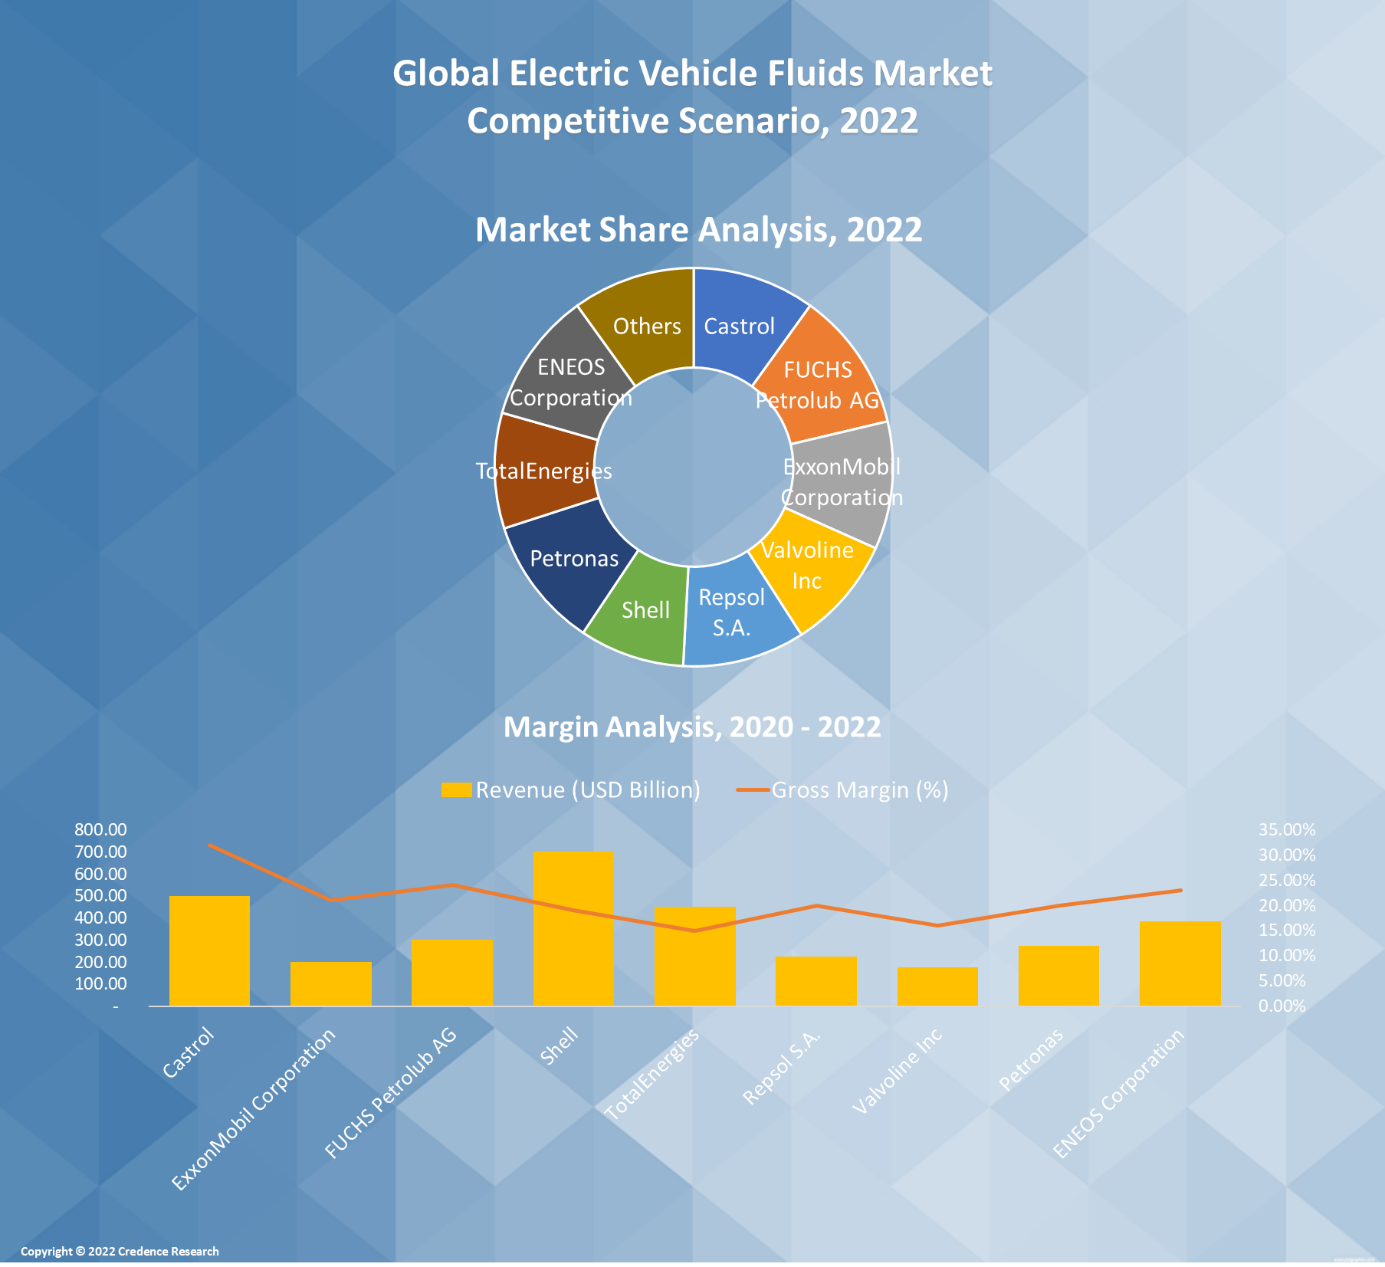 Electric Vehicle Fluids Market